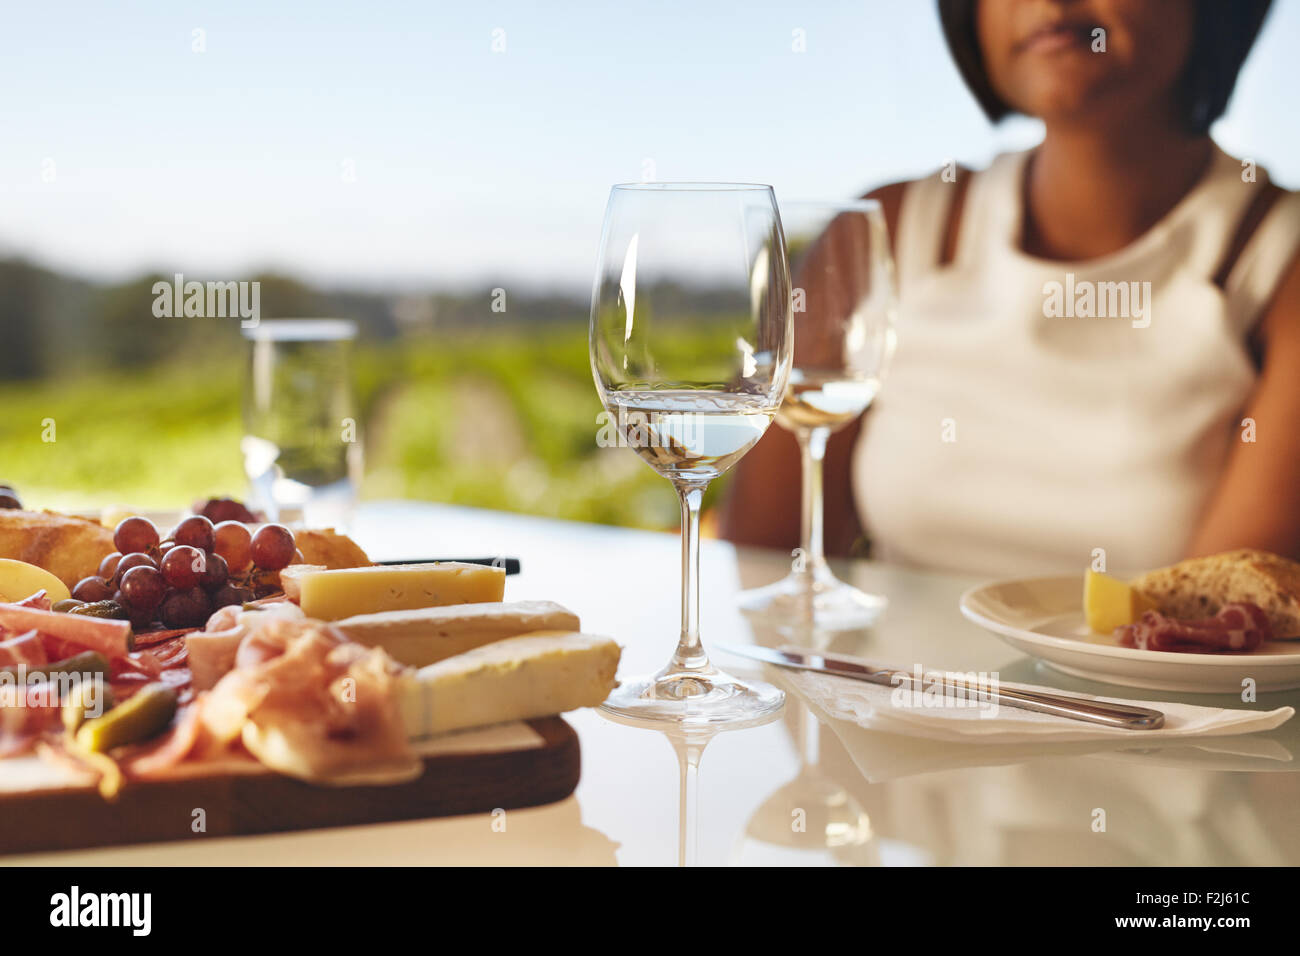 Tabella riportata in cantina con due bicchieri di vino, formaggio e uva. Donna seduta nel retro al ristorante cantina tabella. Foto Stock